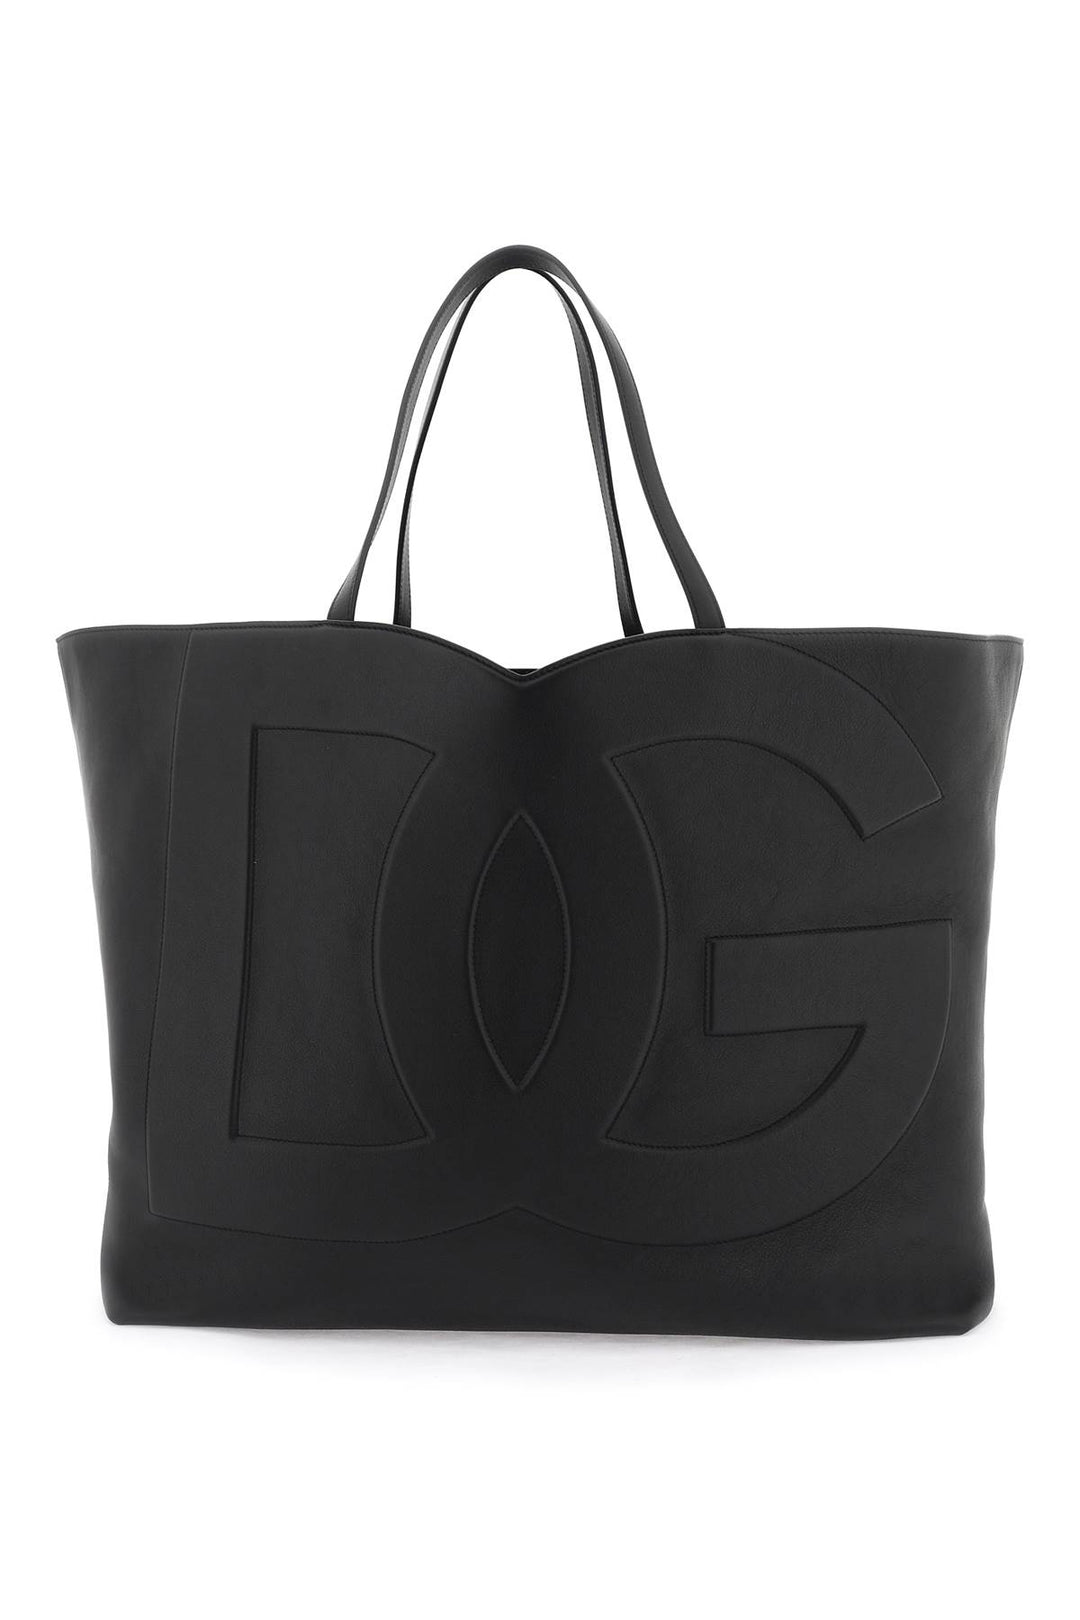 Dolce & Gabbana Large Dg Logo Shopping Bag   Nero